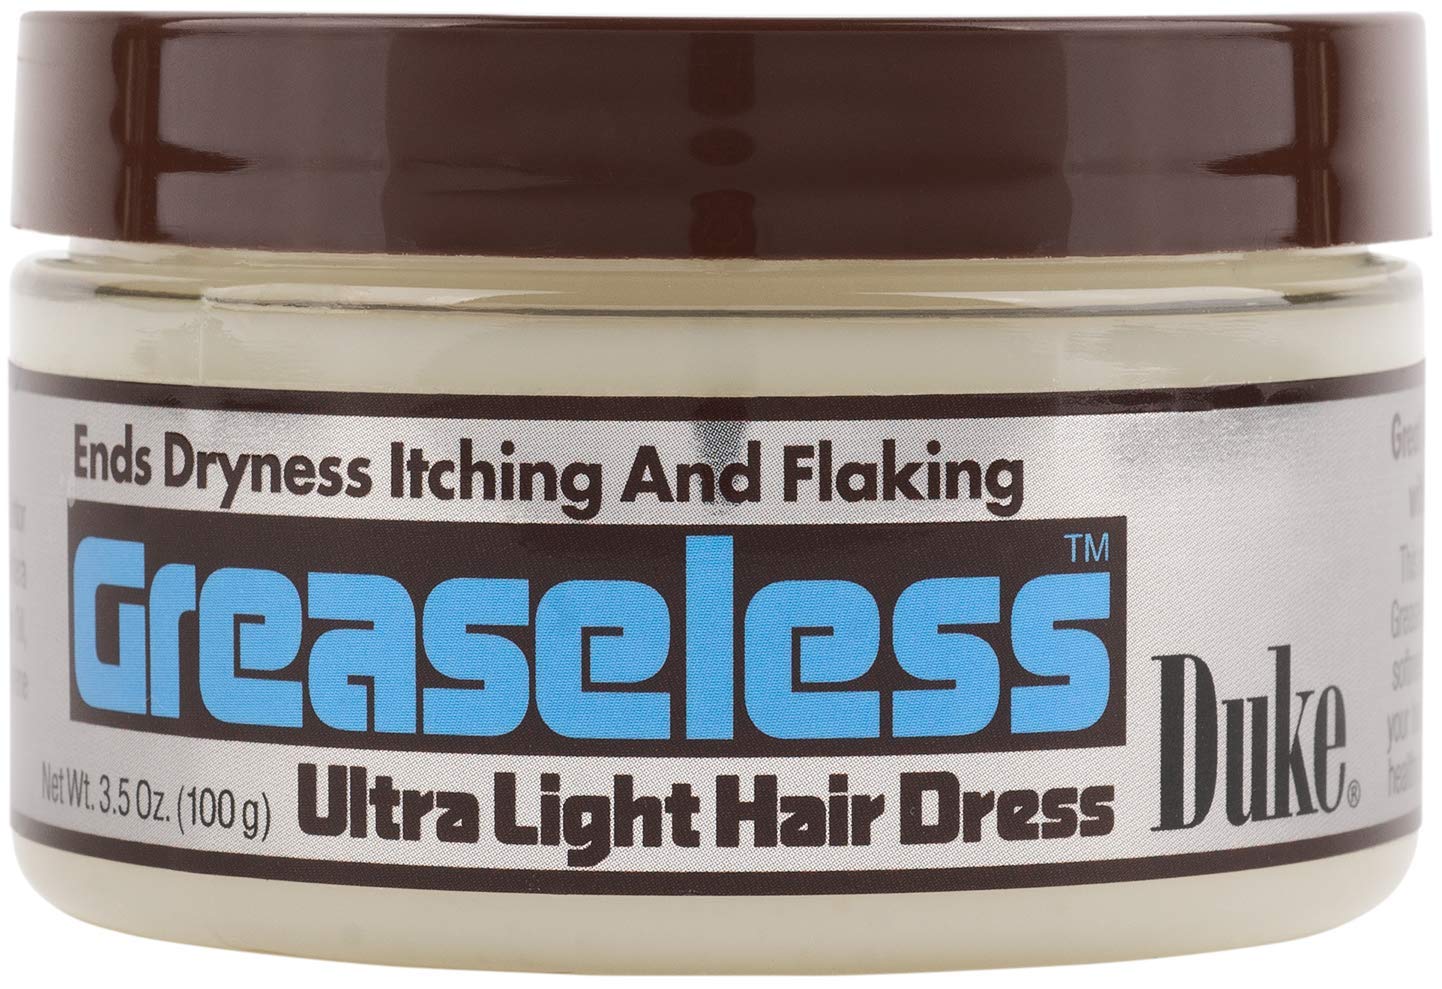 Duke Greaseless Ultra Light Hair Dress